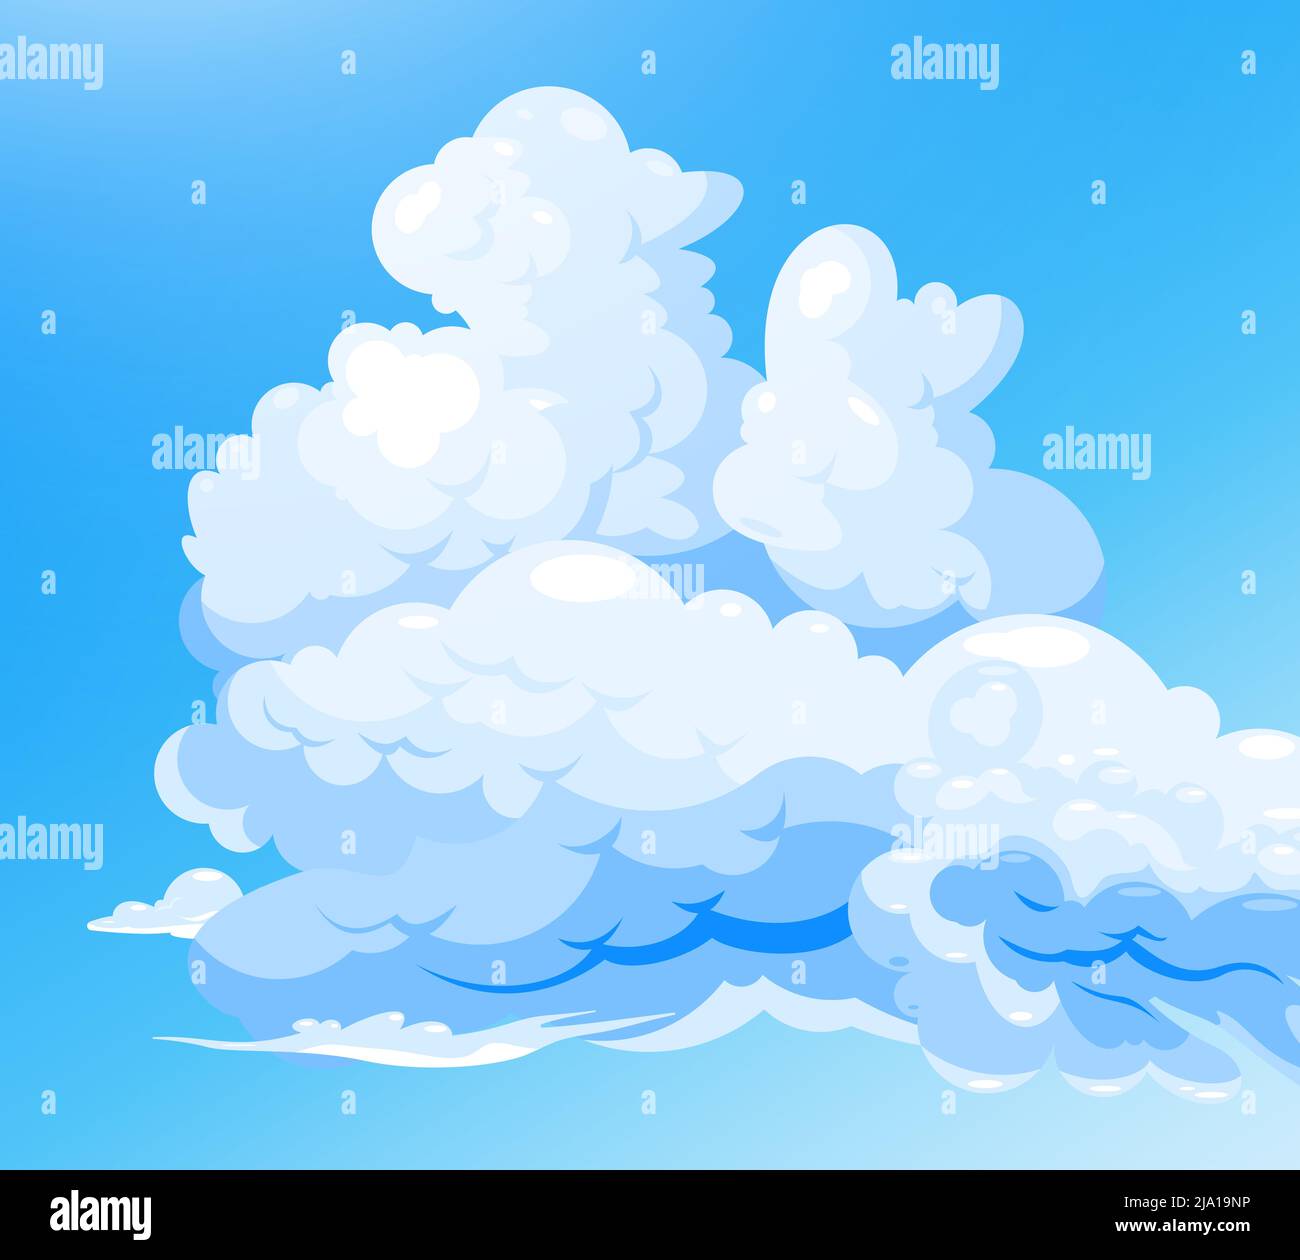 Wolkiger Himmel blauer Hintergrund mit Cartoon-Gruppe von weißen Cumulus Wolken flachen Vektor-Illustration Stock Vektor